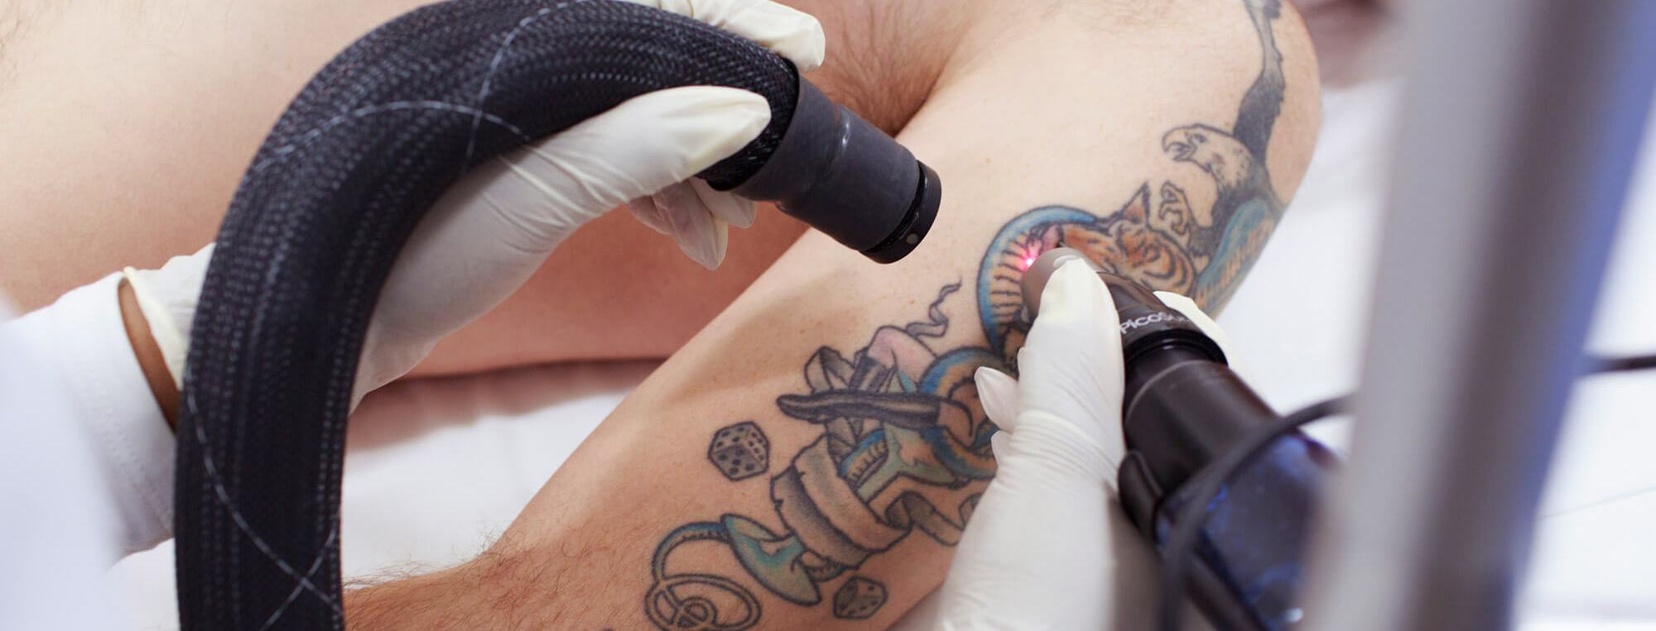 Как избавиться от татуировки на теле